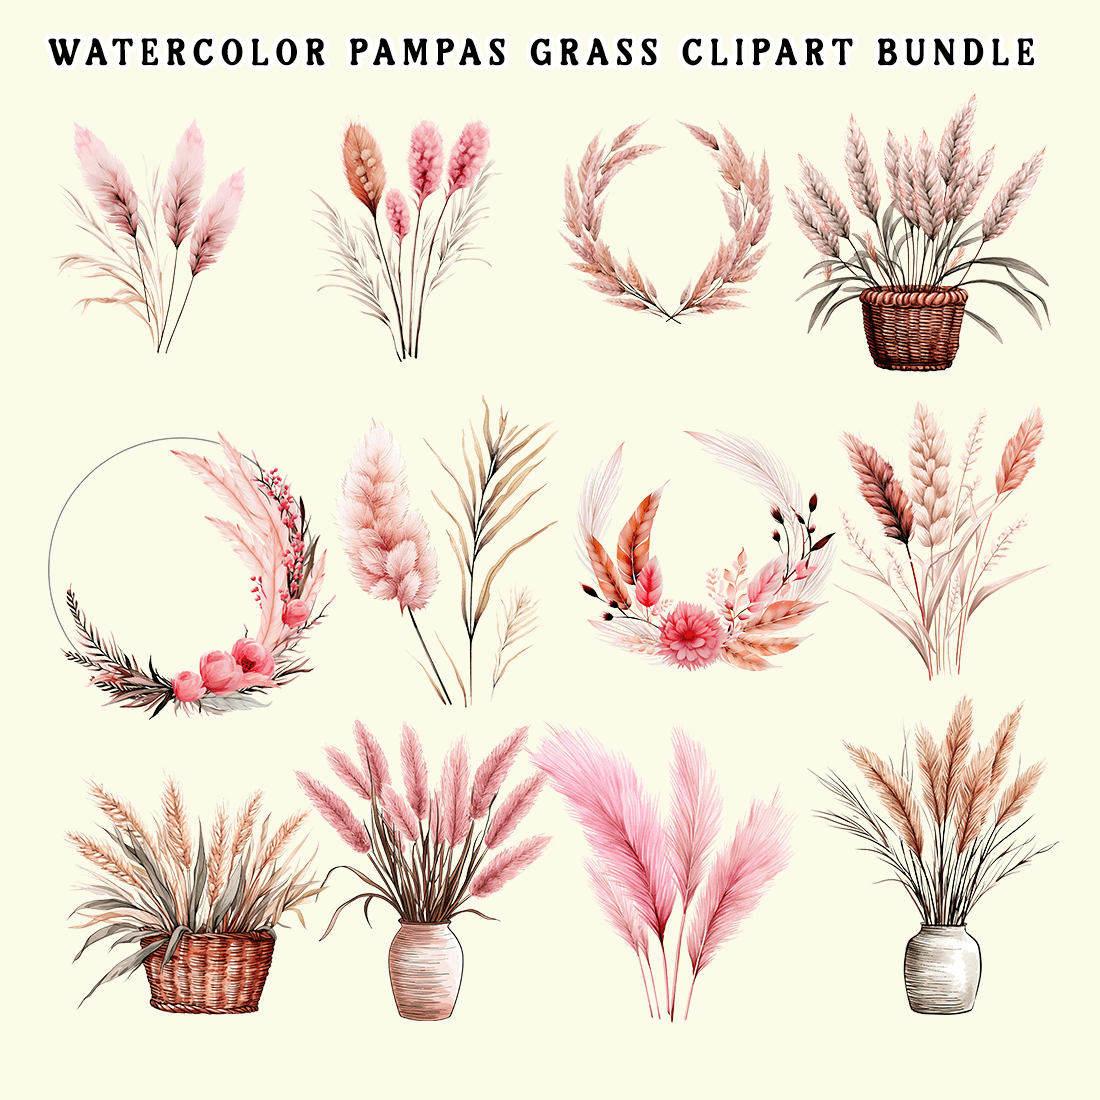 Watercolor Pampas Grass Clipart Bundle preview image.